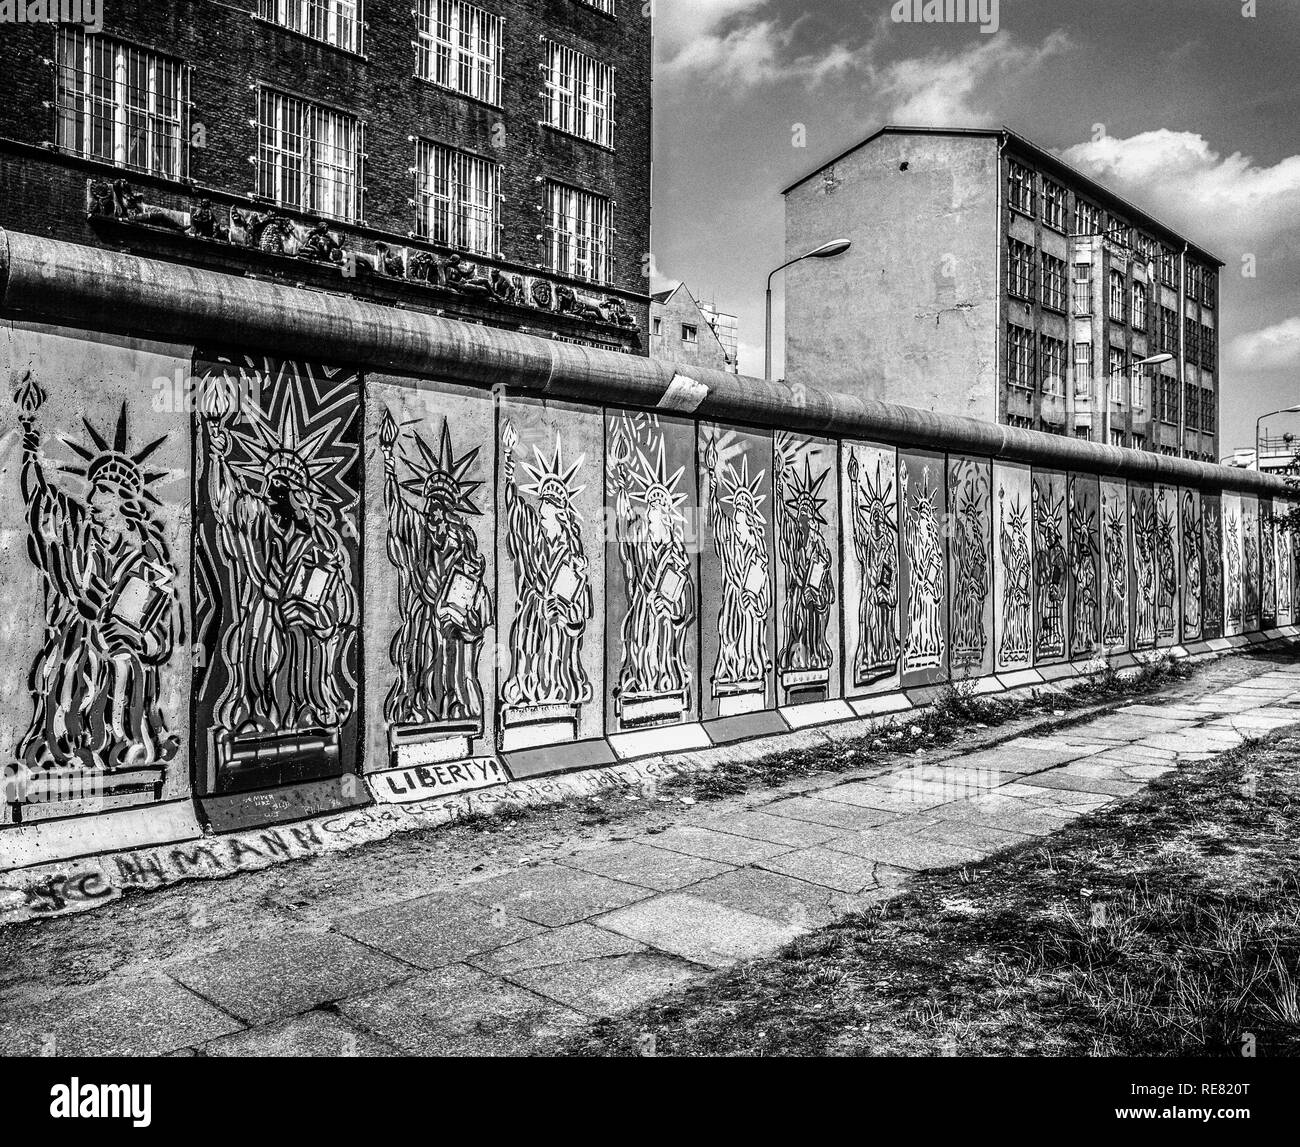 Agosto 1986, il muro di Berlino, la Statua della Libertà affreschi, lato occidentale, Berlino Est edifici, Zimmerstrasse street, Berlino Ovest lato, Germania, Europa Foto Stock